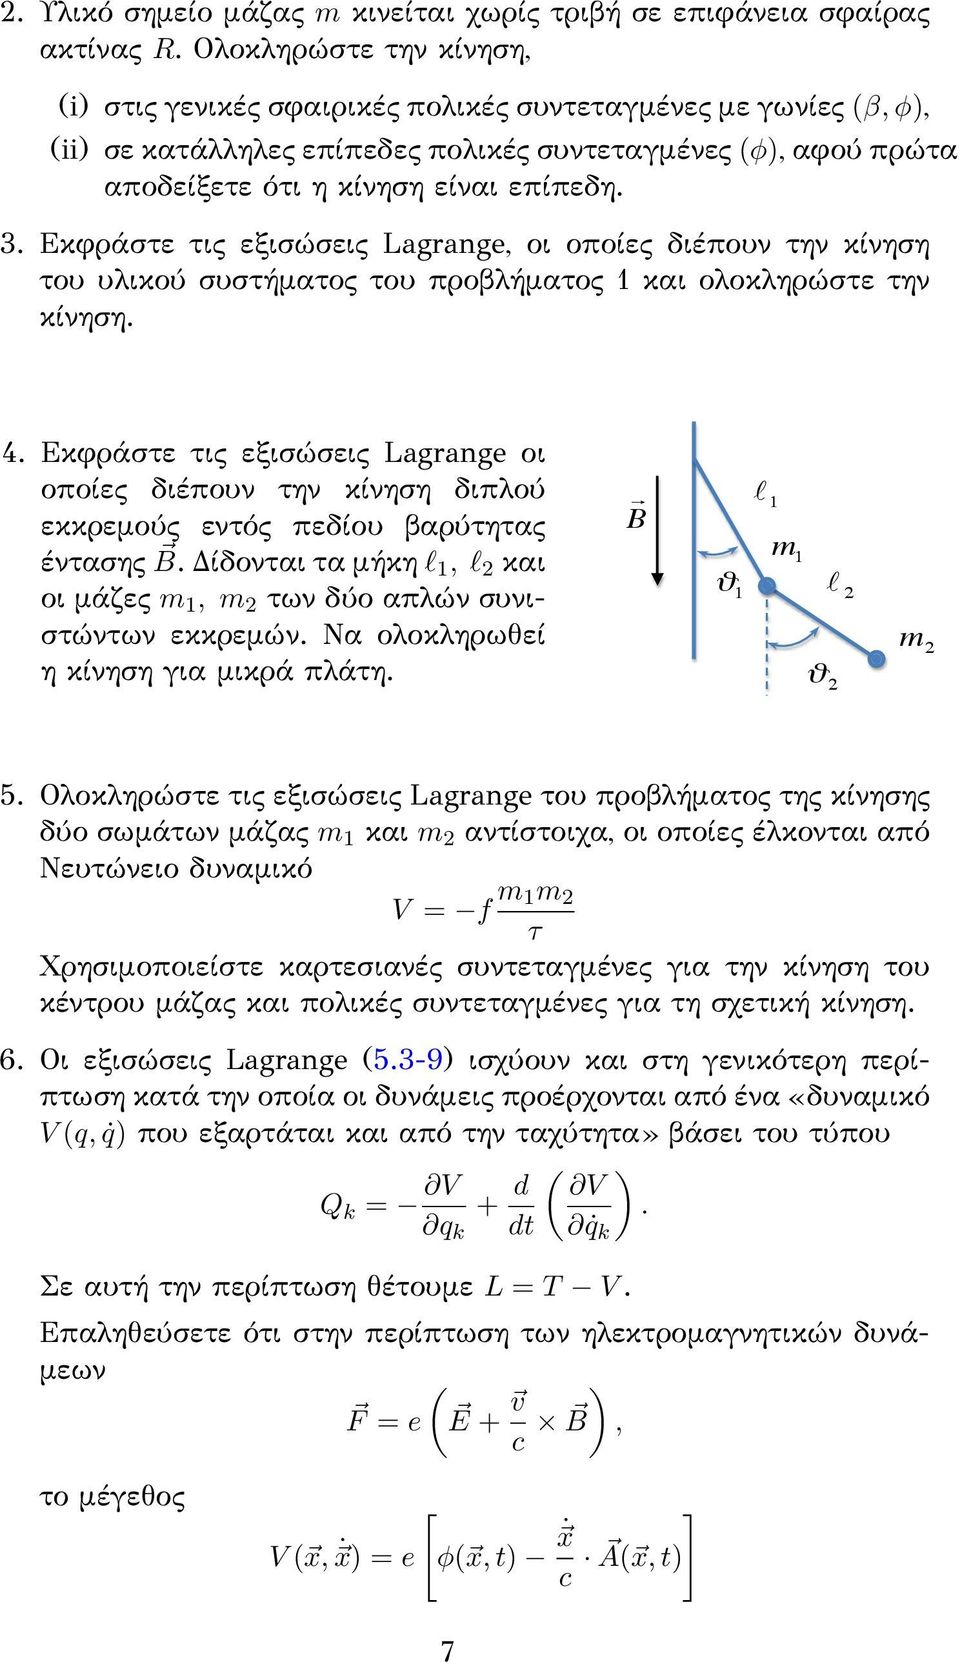 Εκφράστε τις εξισώσεις Lagrange, οι οποίες διέπουν την κίνηση του υλικού συστήματος του προβλήματος 1 και ολοκληρώστε την κίνηση. 4.